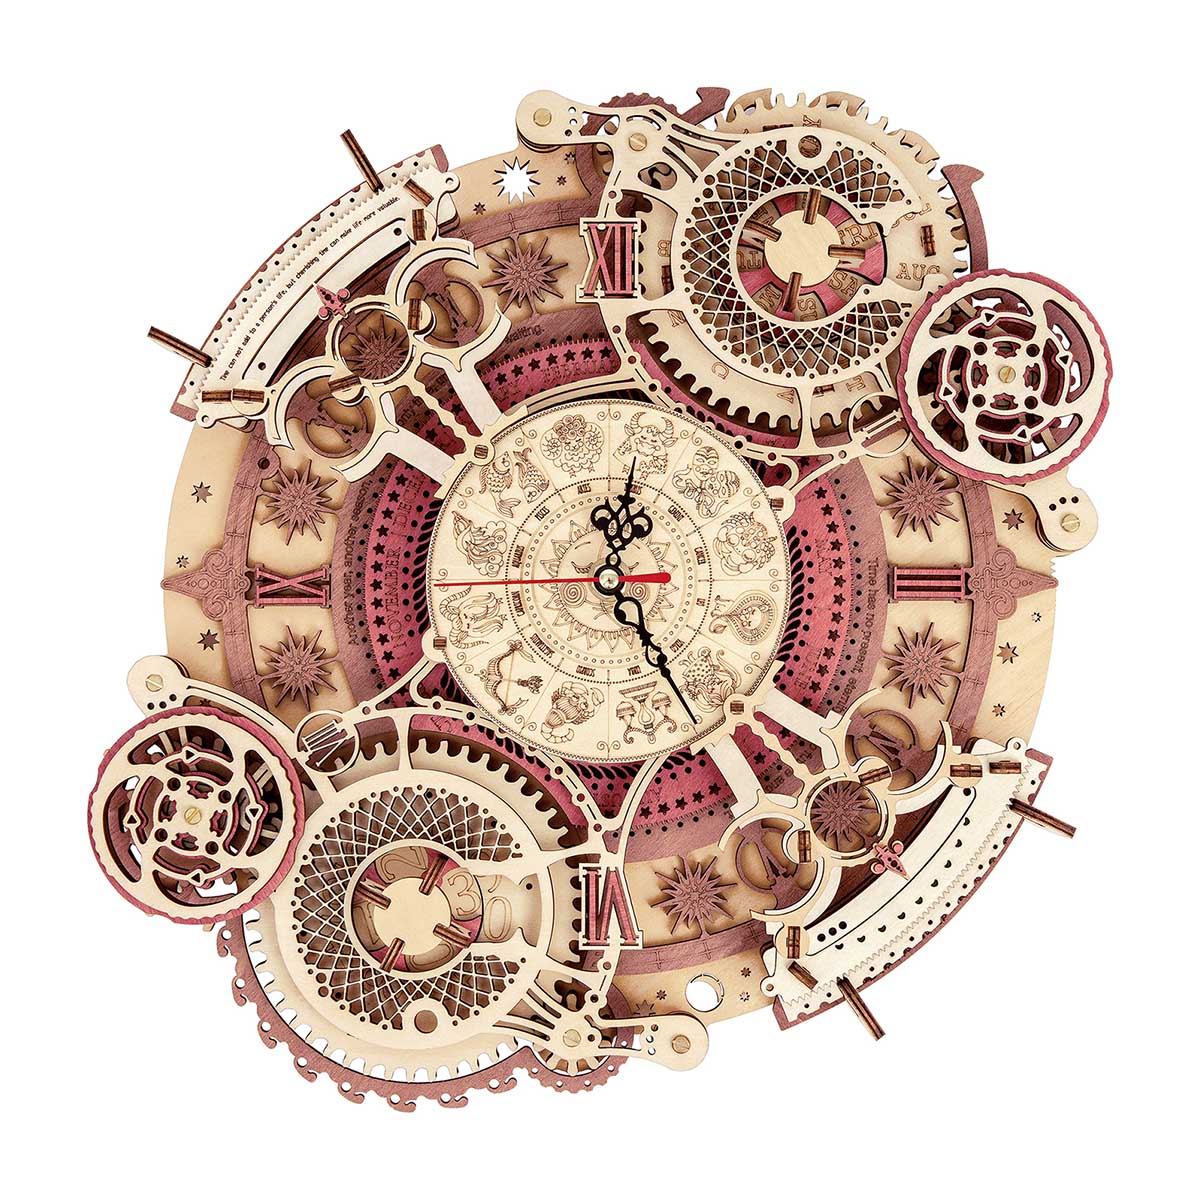 Zodiac Wall Clock Mechanical